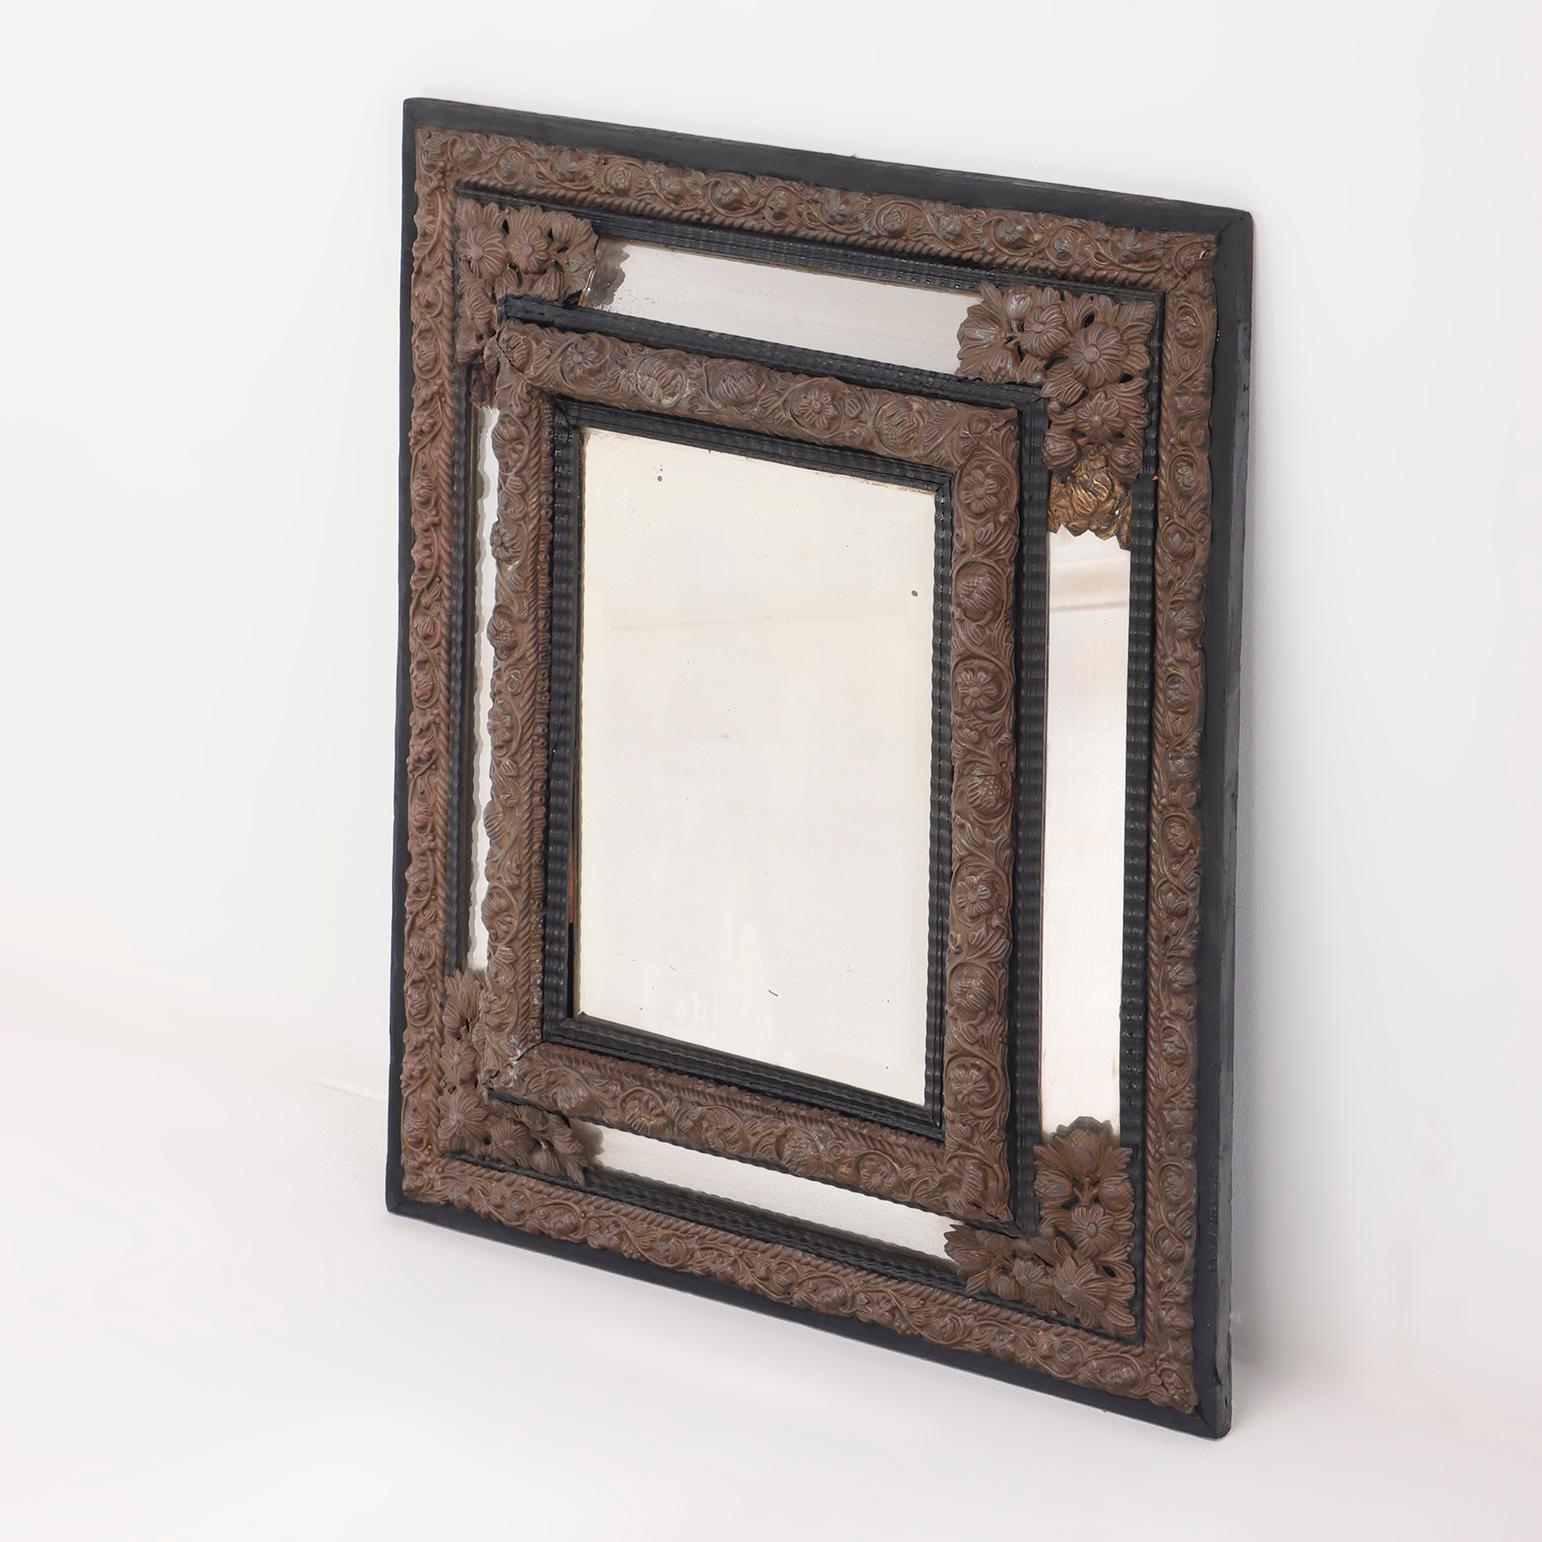 Petit miroir en laiton et bois repoussé de style continental du XIXe siècle, avec des moulures en forme d'ondulations.